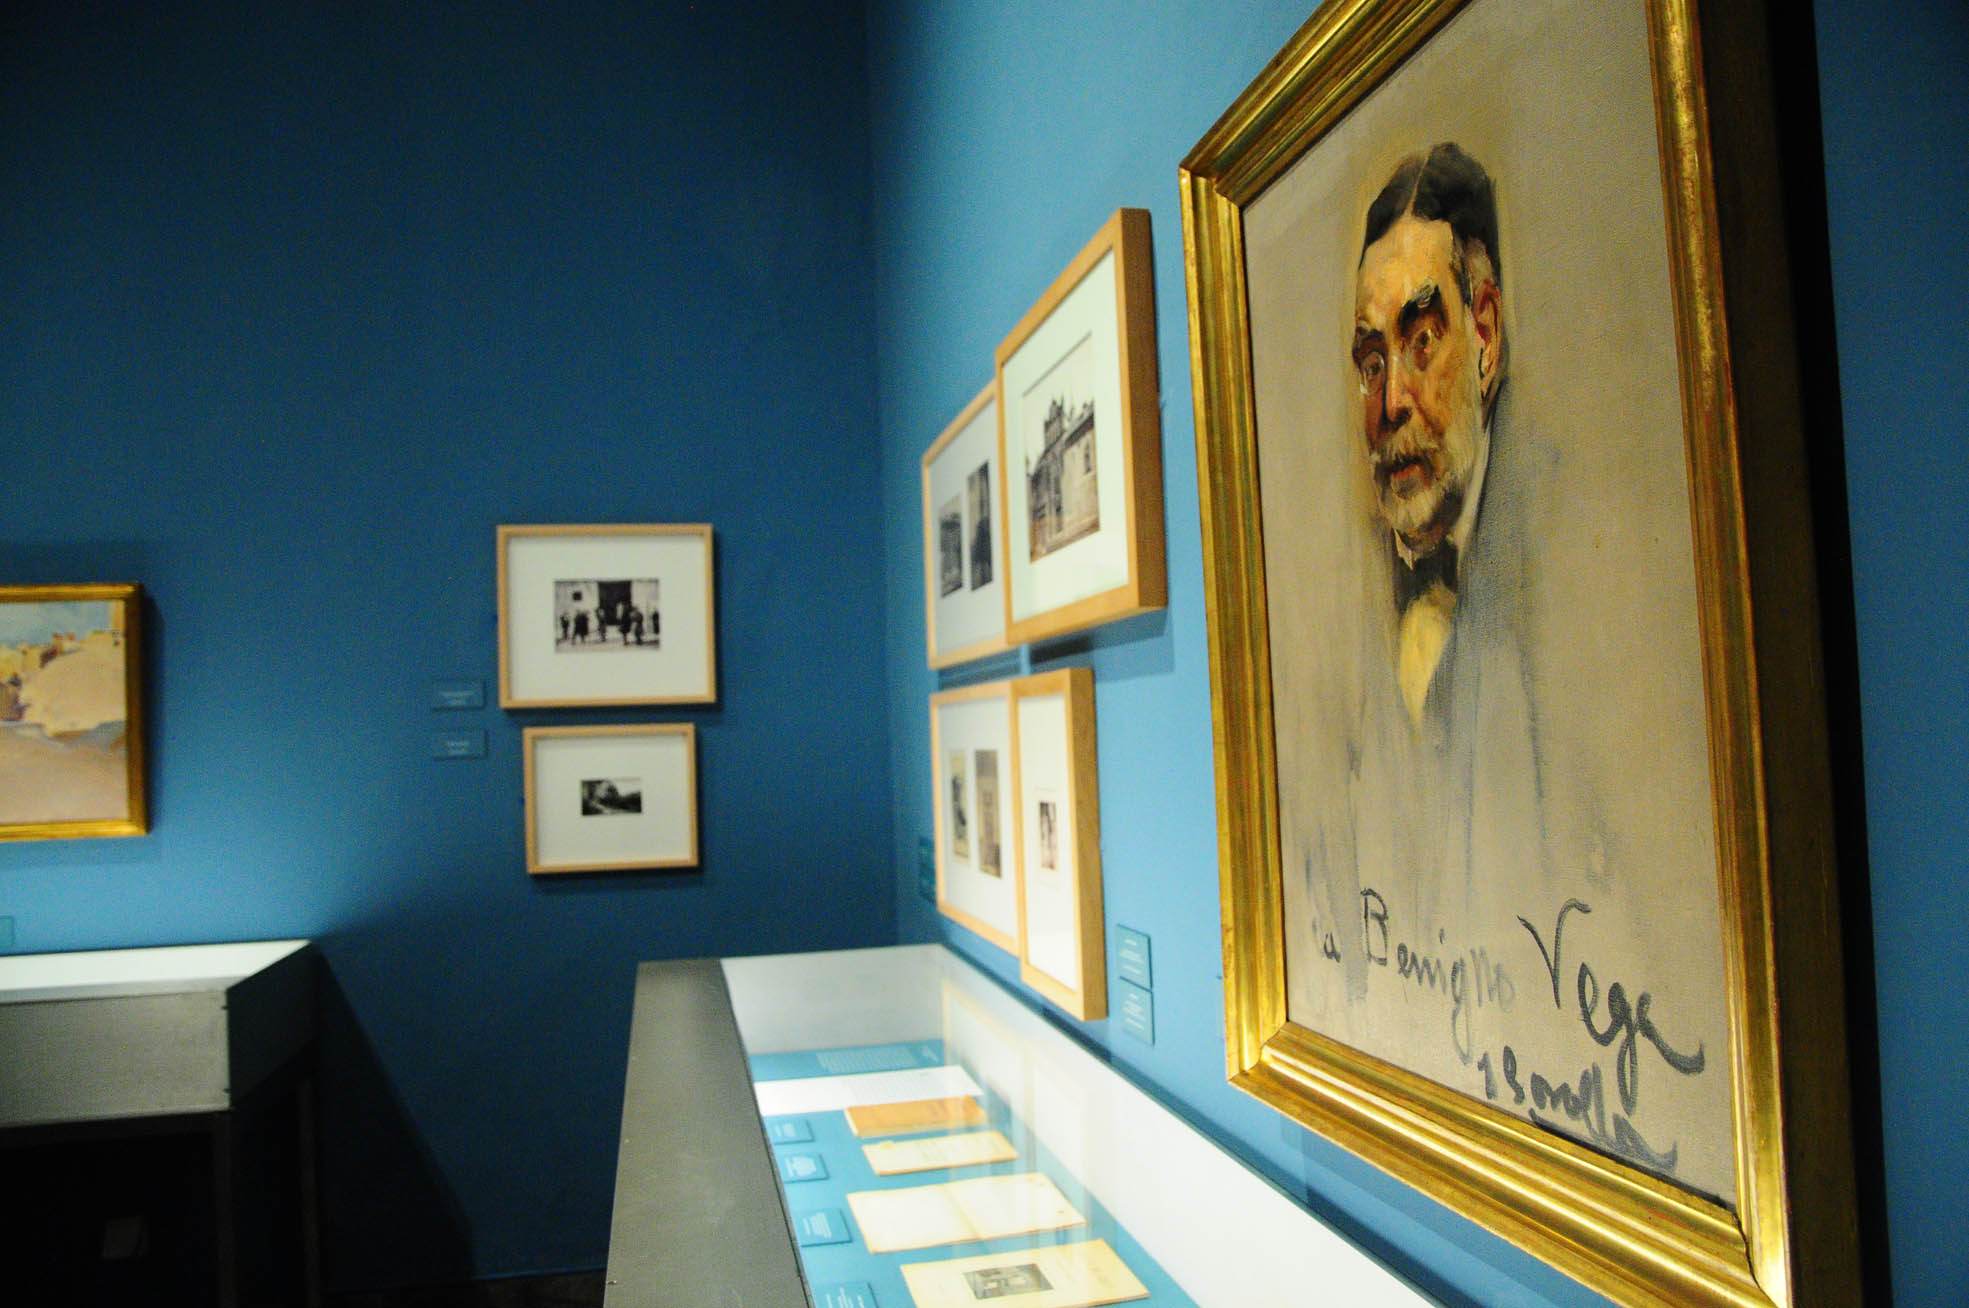 Un detalle de la exposición sobre Cossío y el Greco